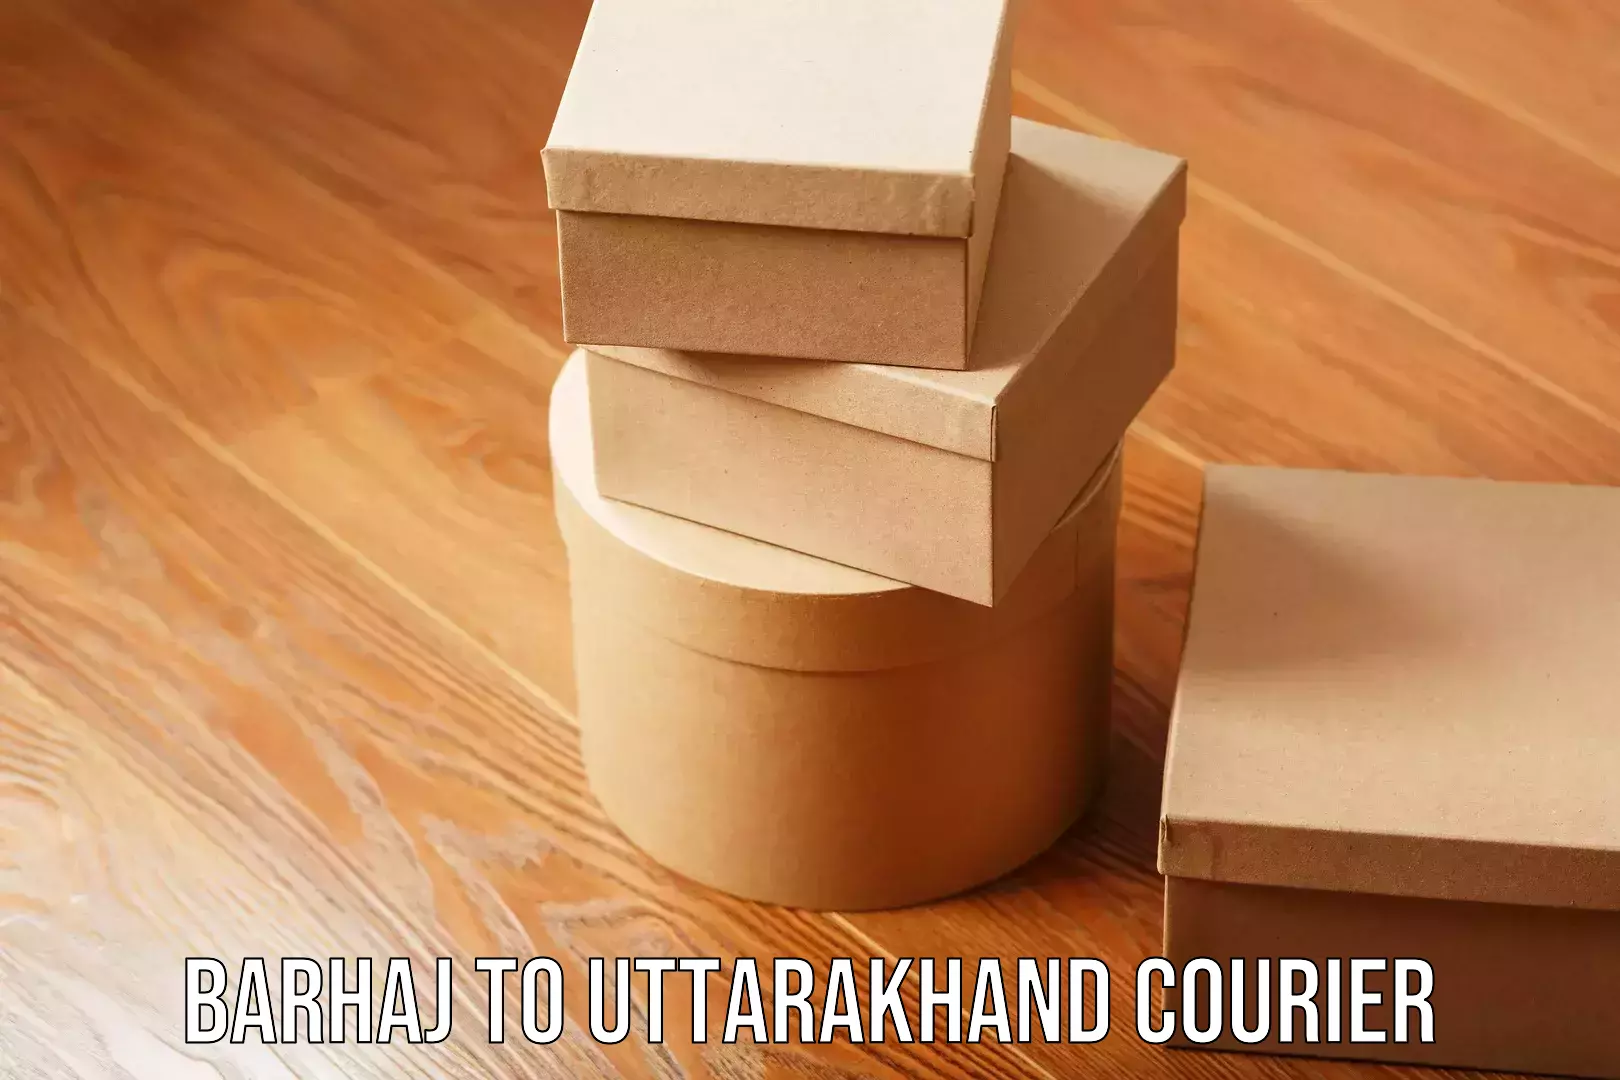 Flexible parcel services Barhaj to Uttarakhand